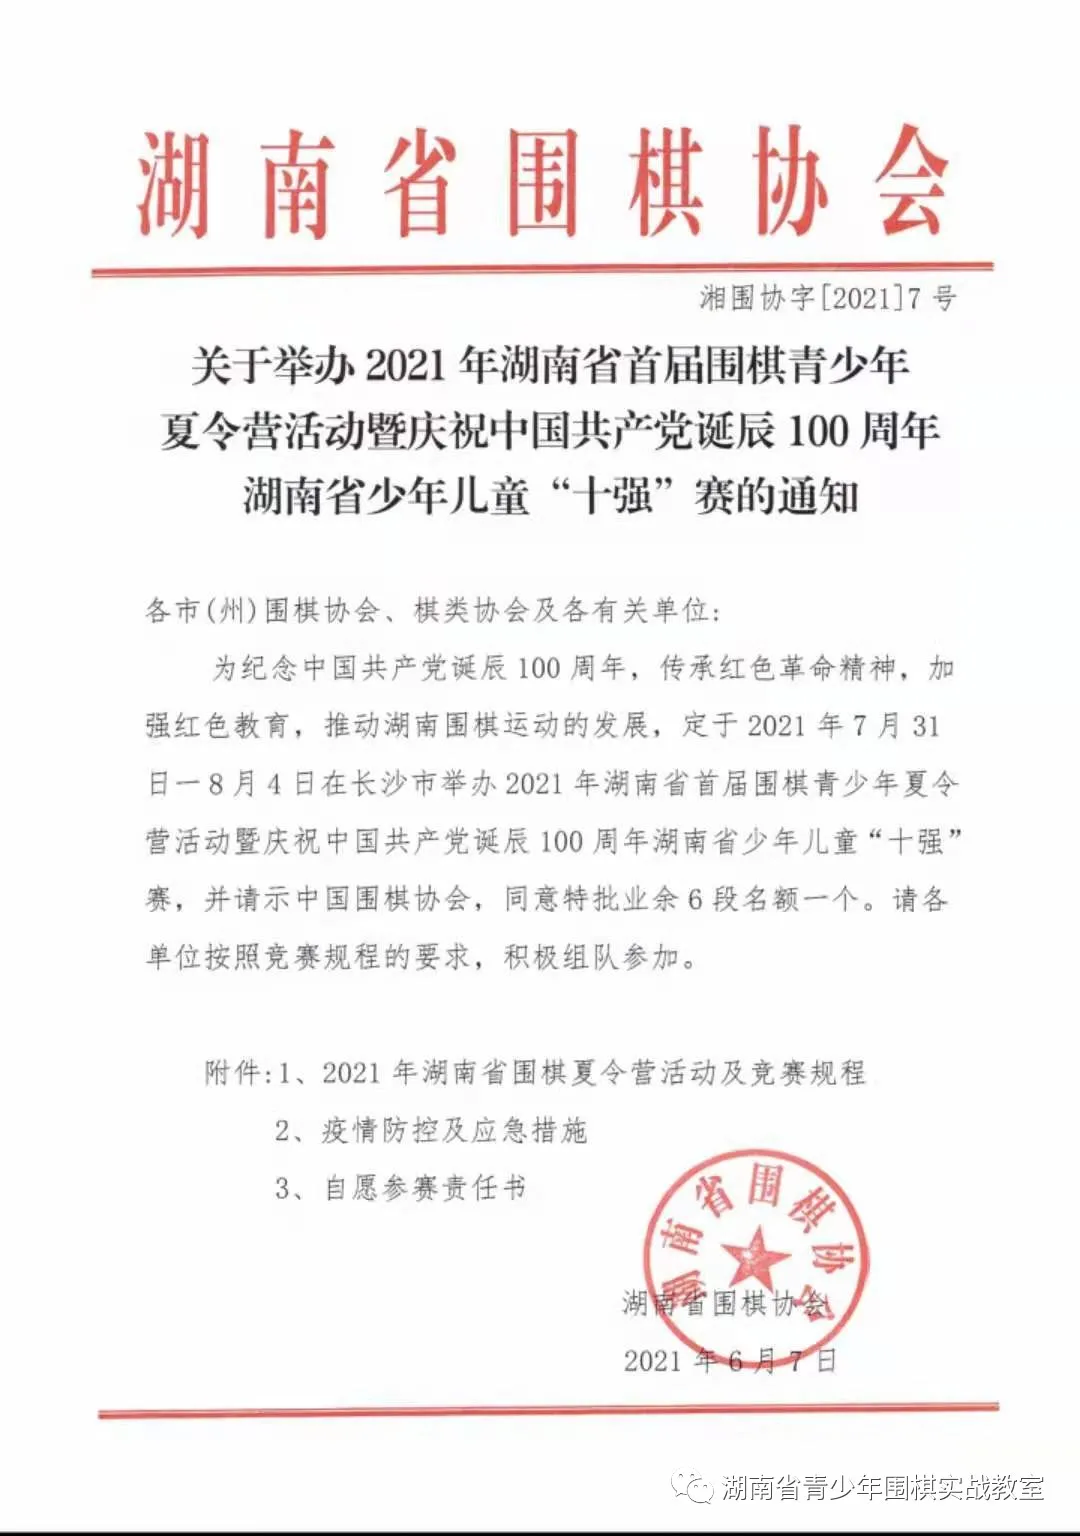 关于举办2021年湖南省首届围棋青少年夏令营活动的通知  围棋夏令营 第1张